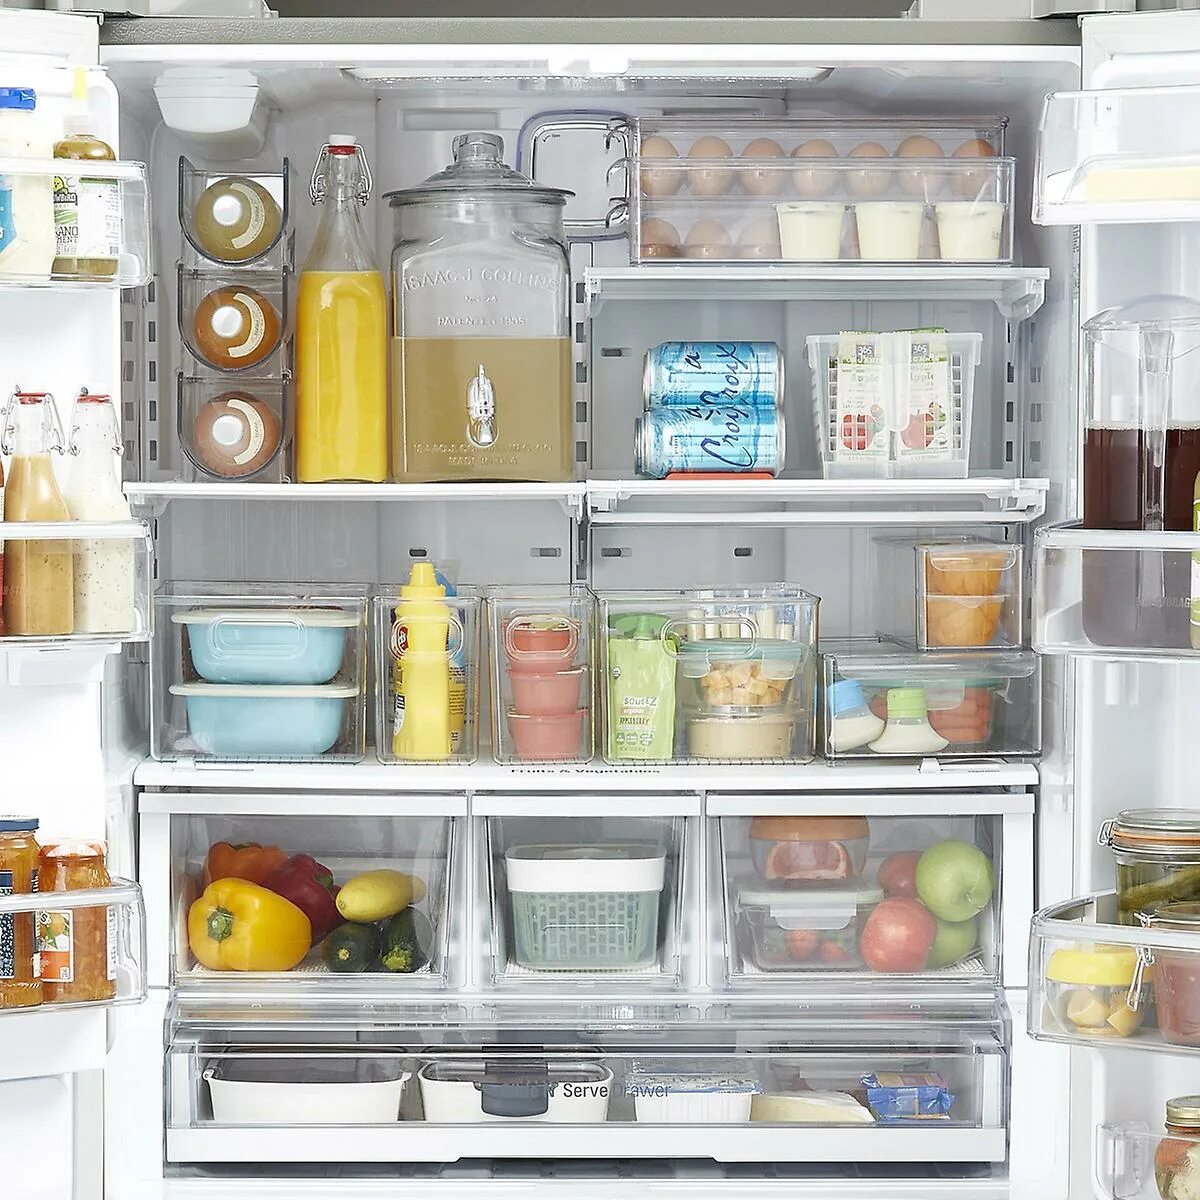 Организация хранения в холодильнике. Организация пространства в холодильнике. Хранение продуктов в холодильнике. Контейнеры для хранения продуктов в холодильнике.